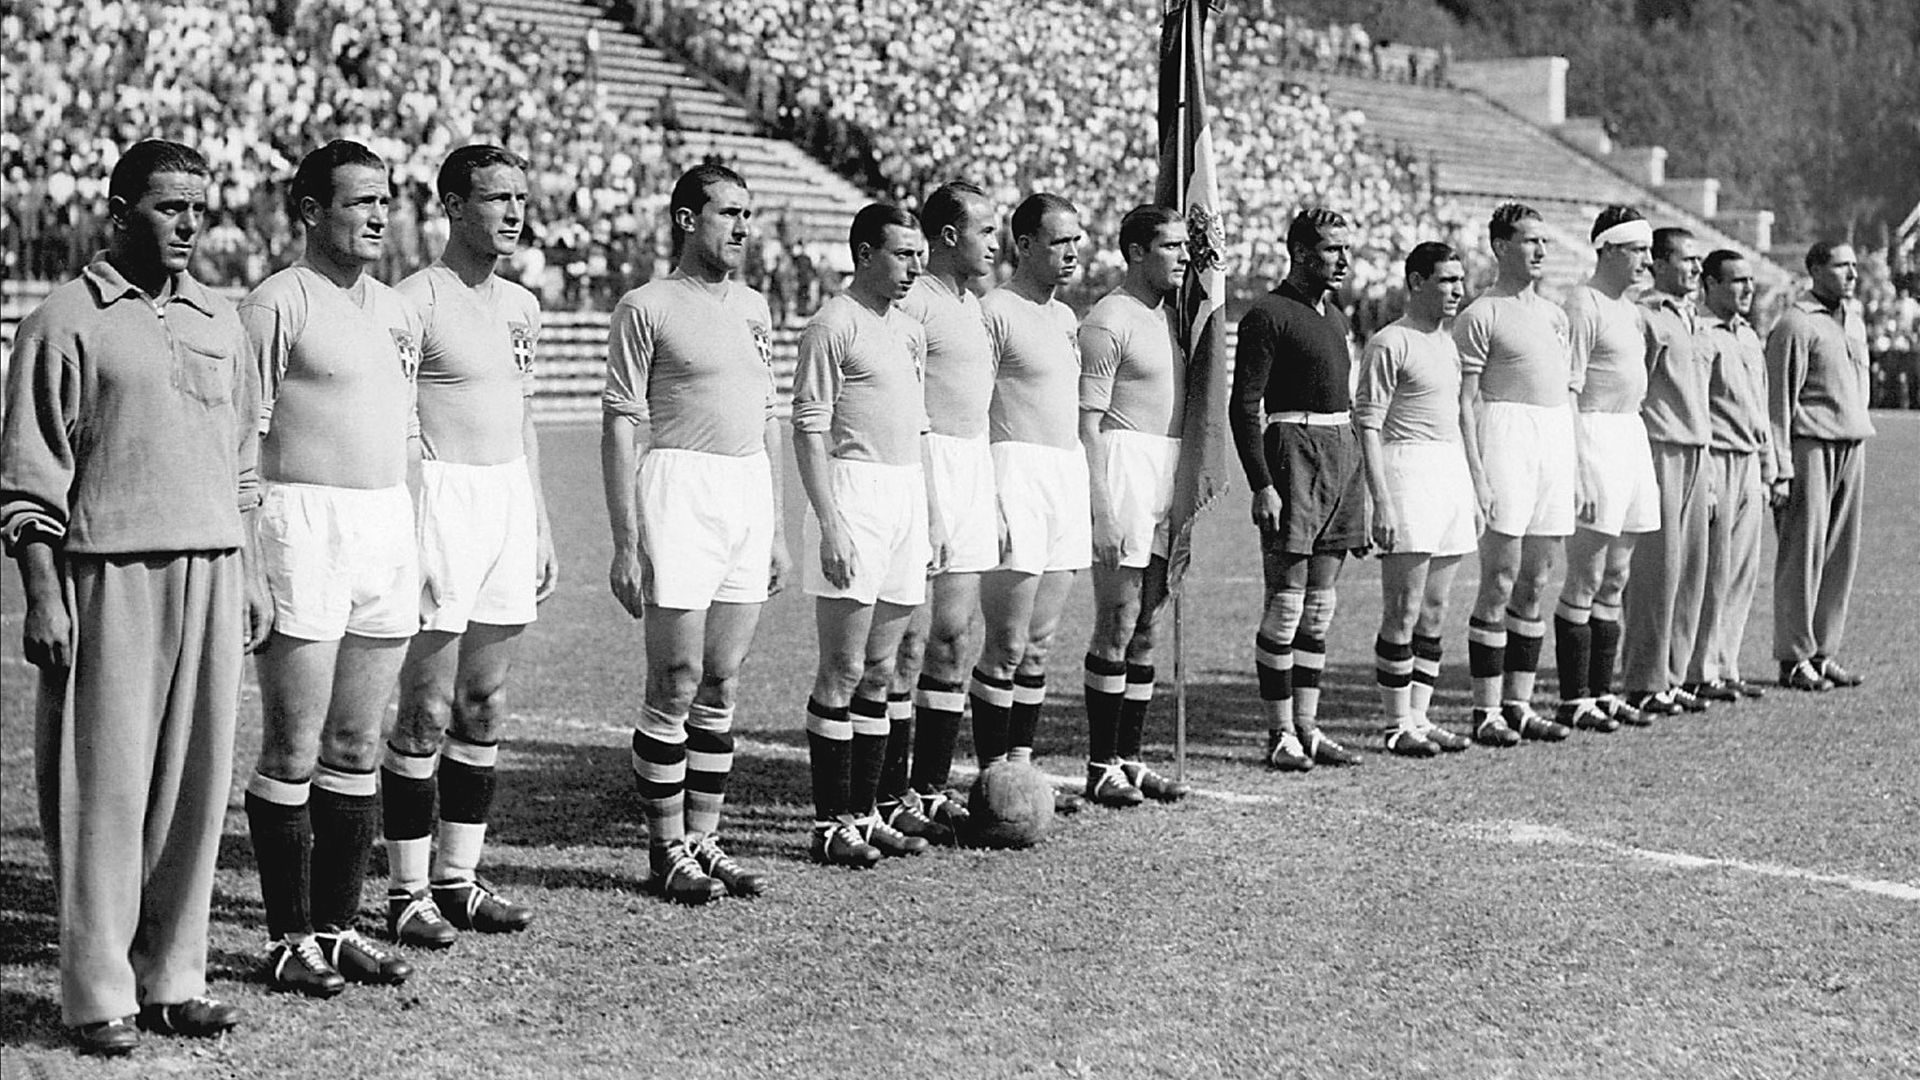 Italy soccer team in 1934